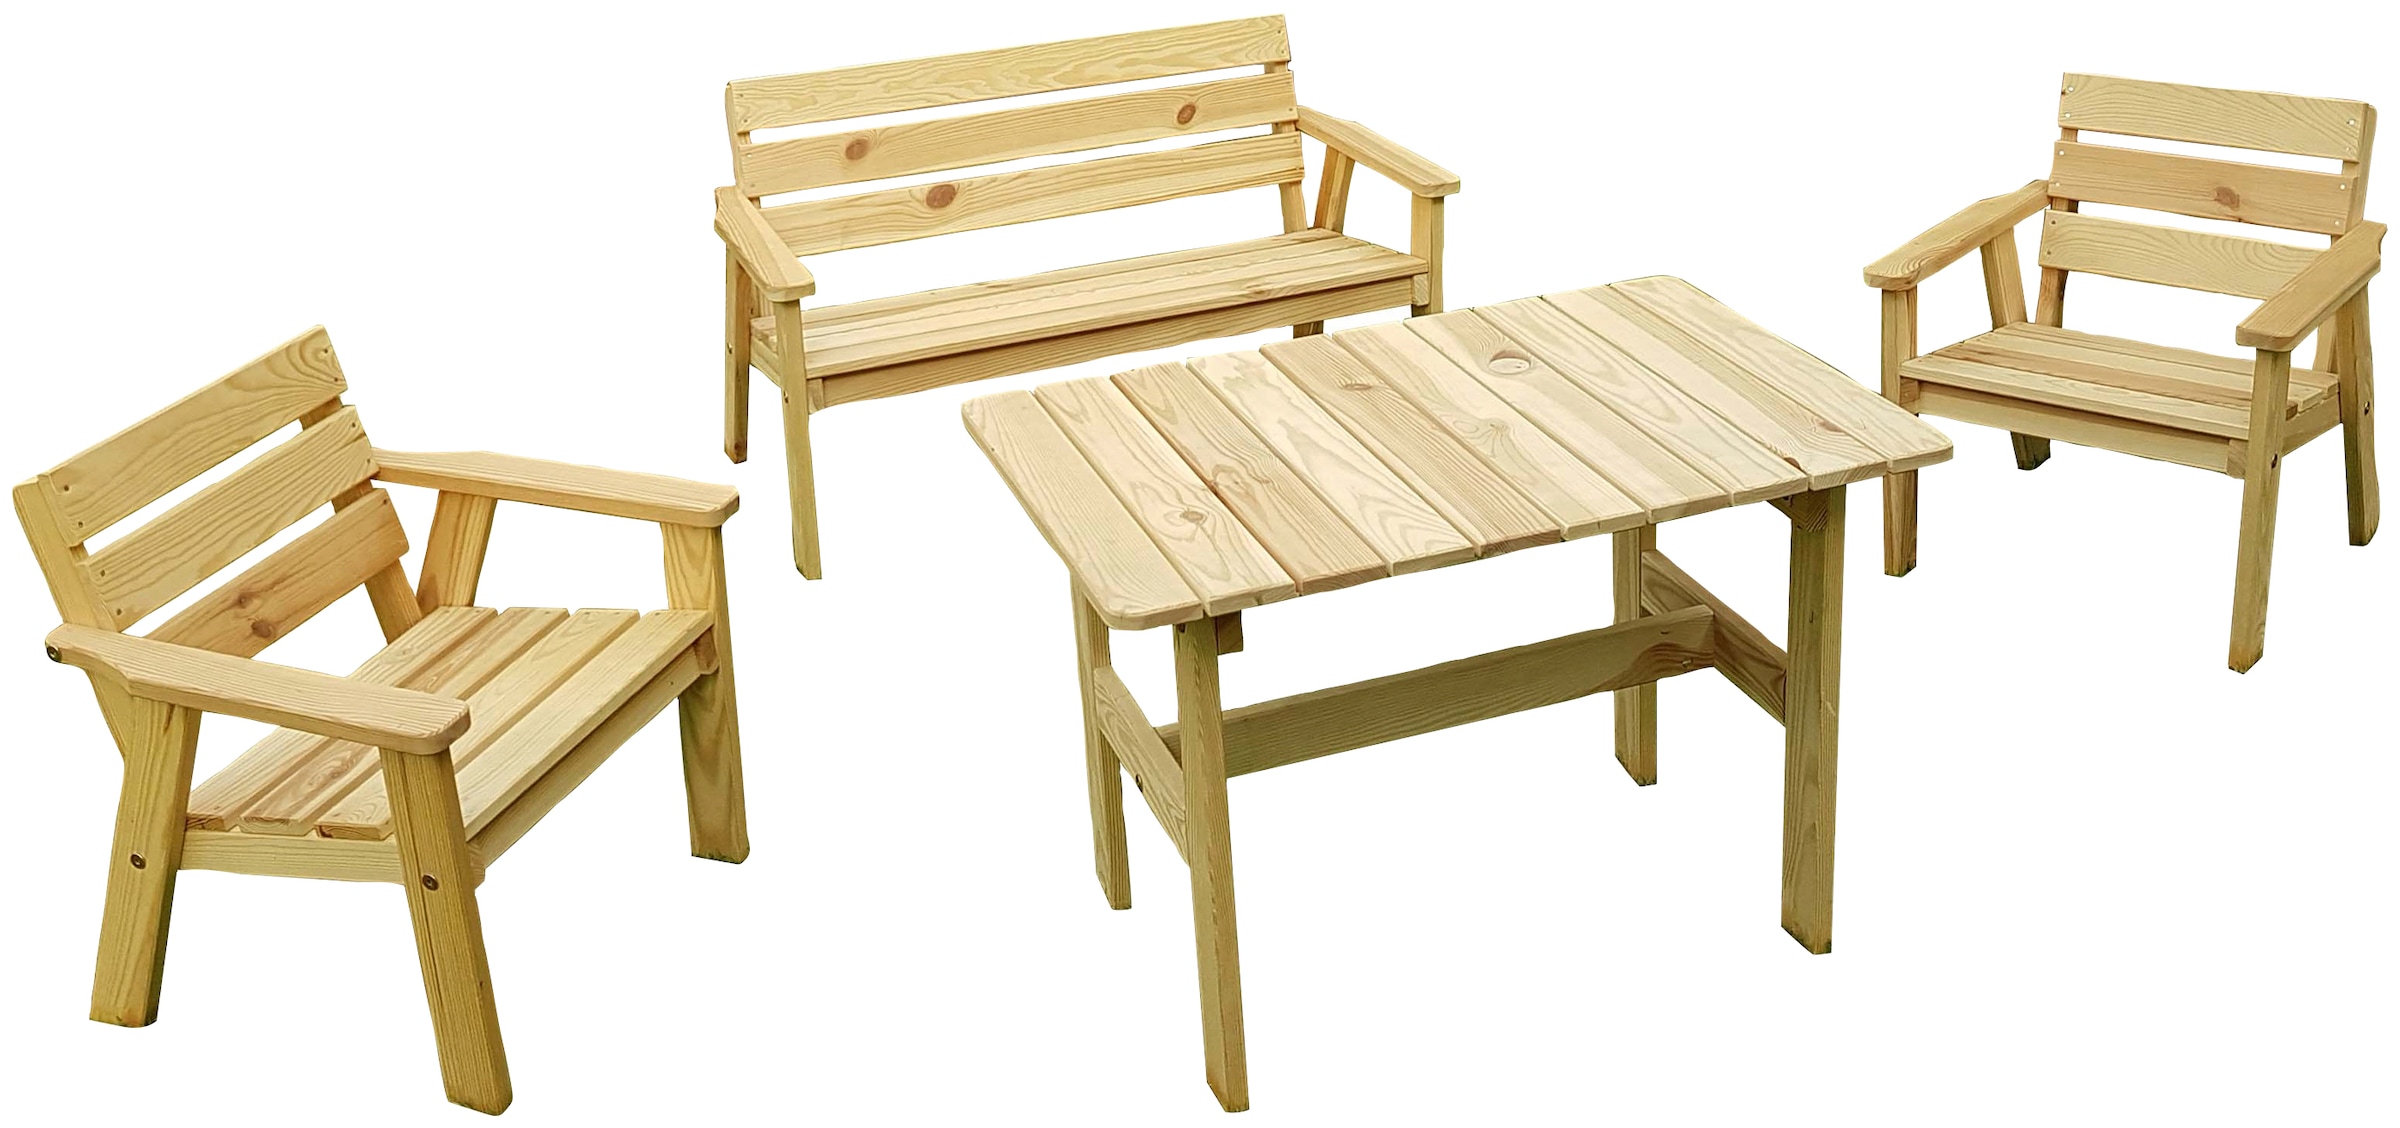 promadino Garten-Kindersitzgruppe »Fehmarn«, (4 tlg.), aus Kiefernholz, 1 Bank, 1 Tisch, 2 Stühle